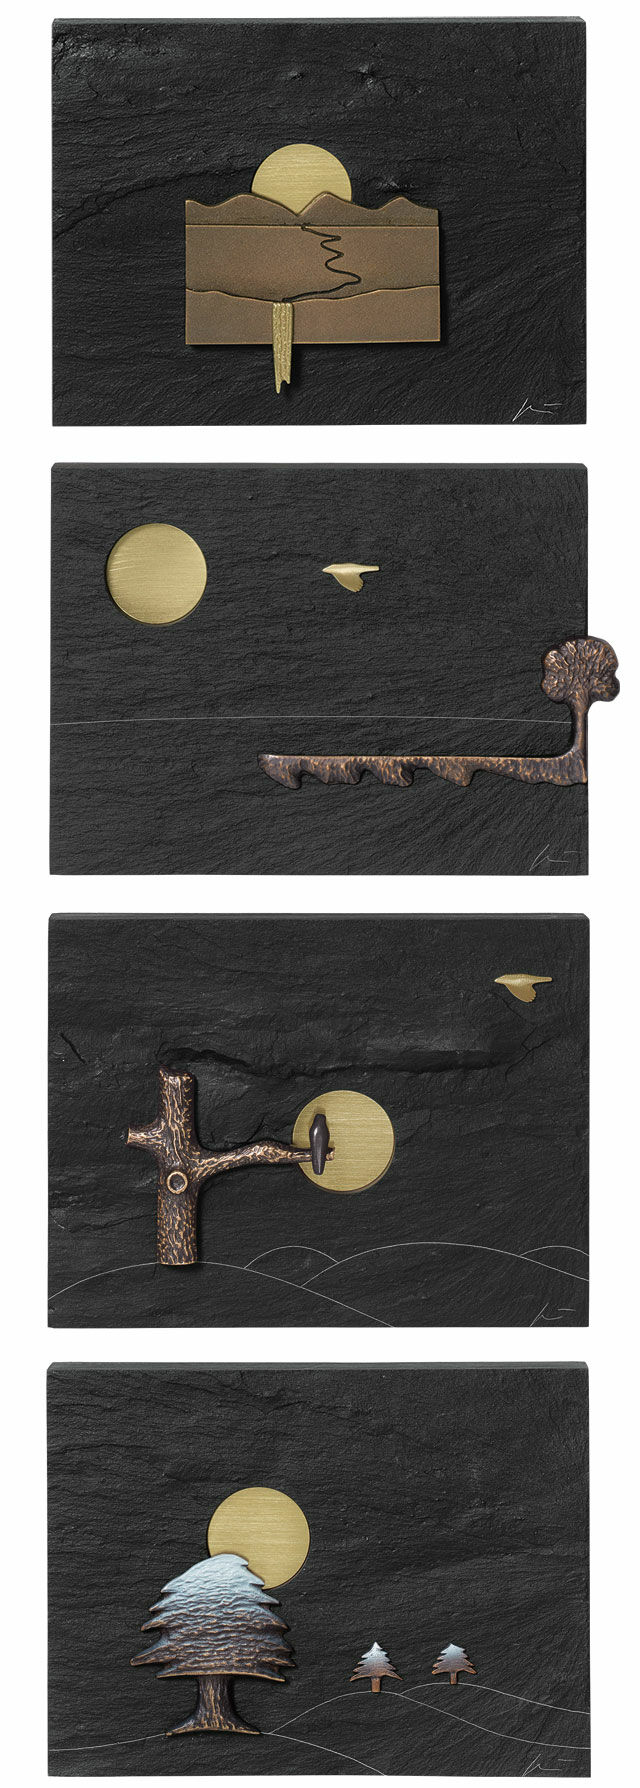 Sæt af 4 vægobjekter "Årstidernes cyklus" cstorm-arsmundi-base.detail.by-artist Klaus Börner